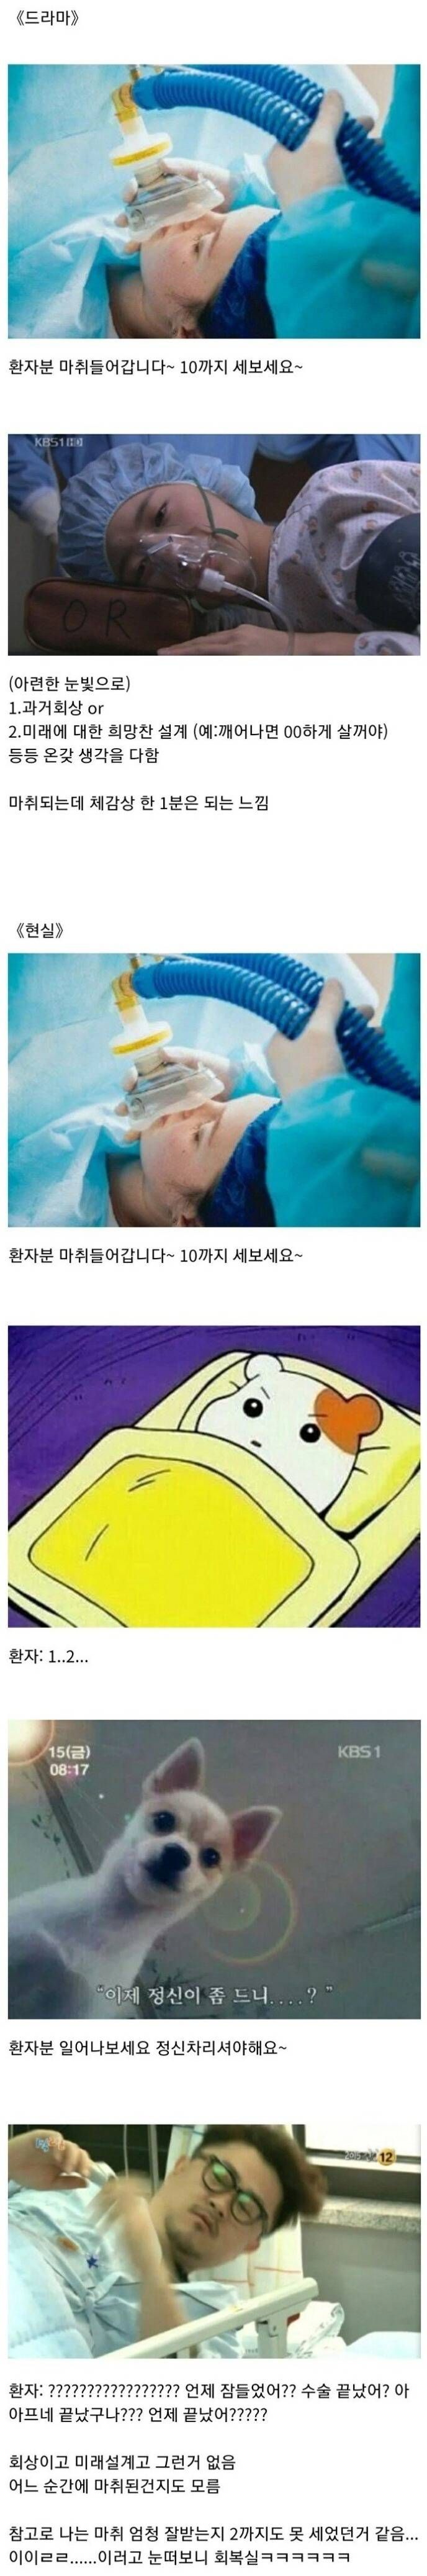 현실과 드라마의 마취.